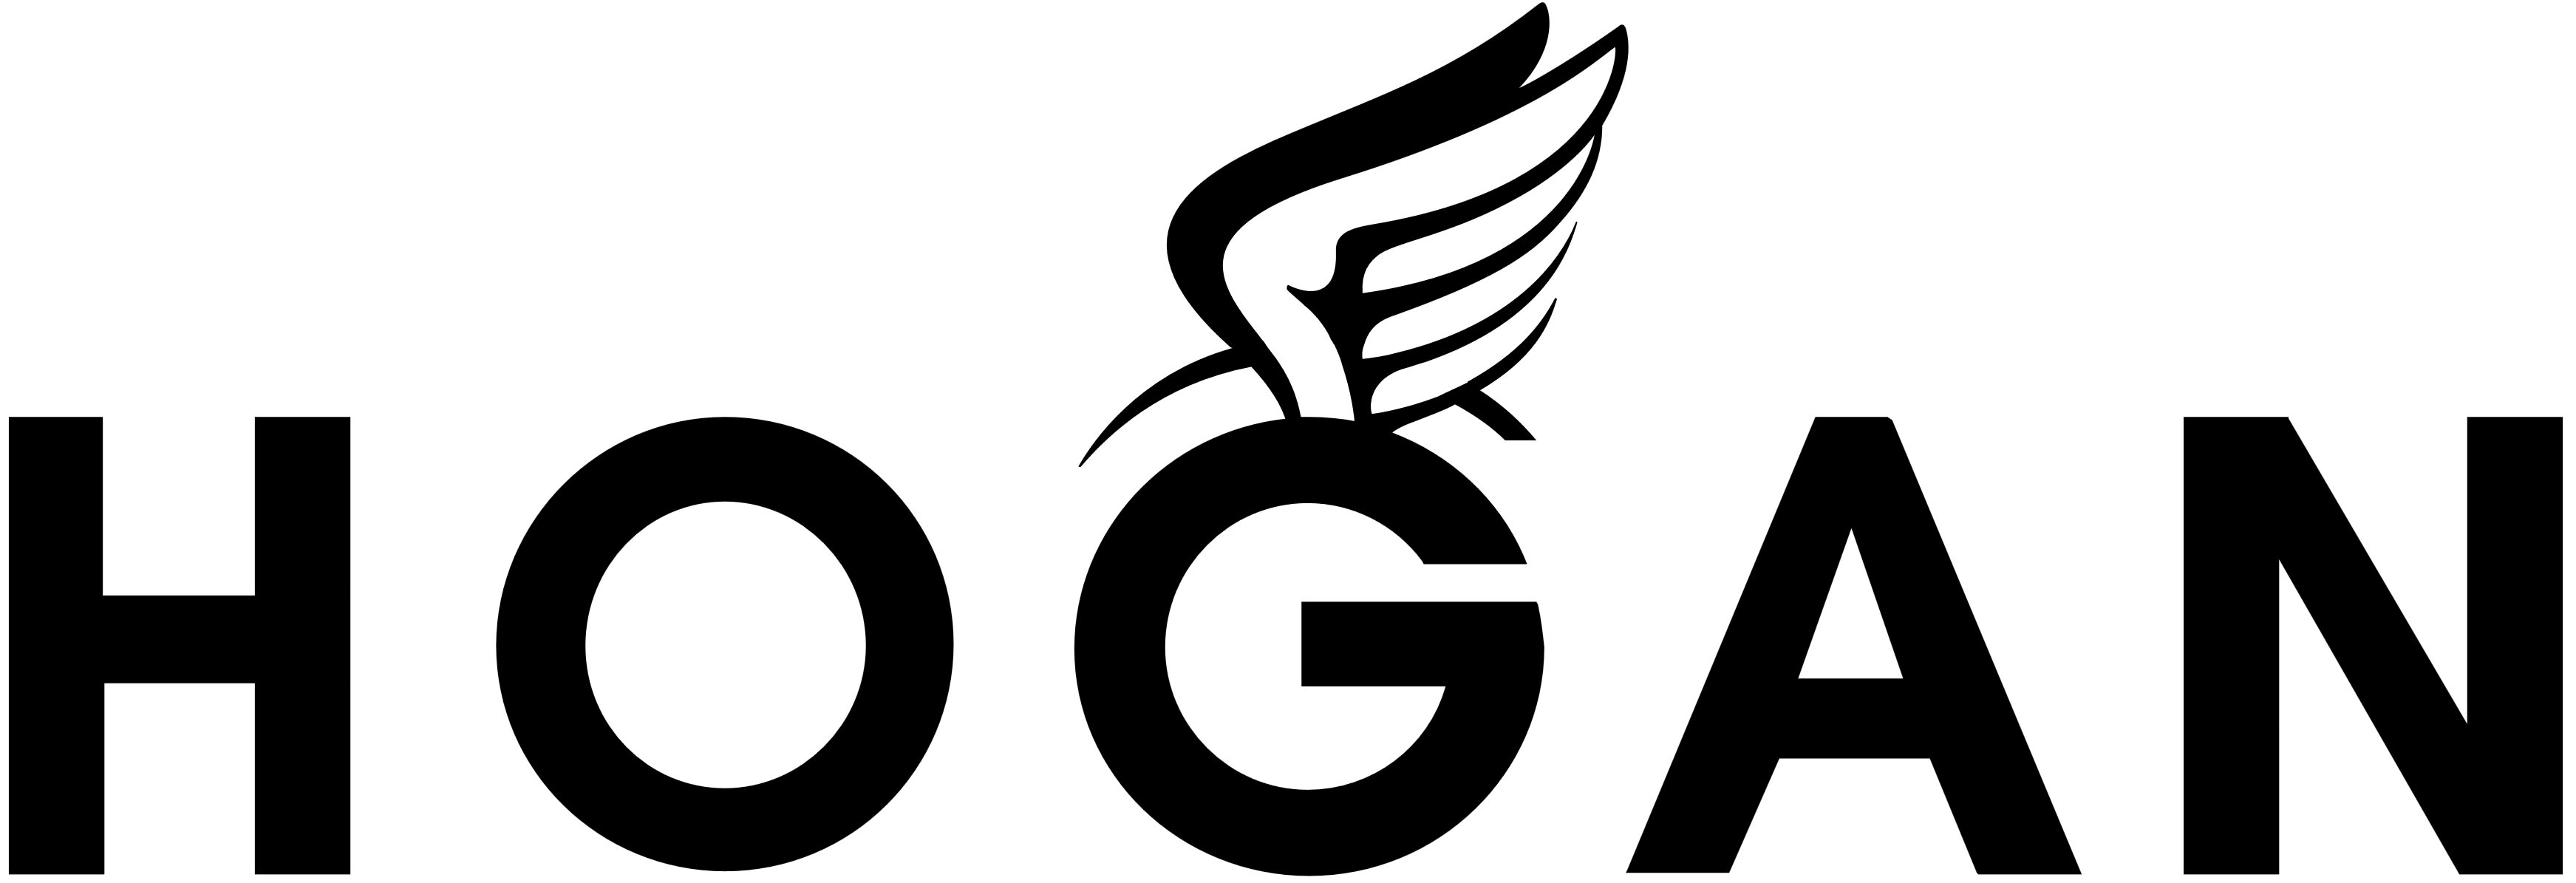 Hogan desktop partner logo